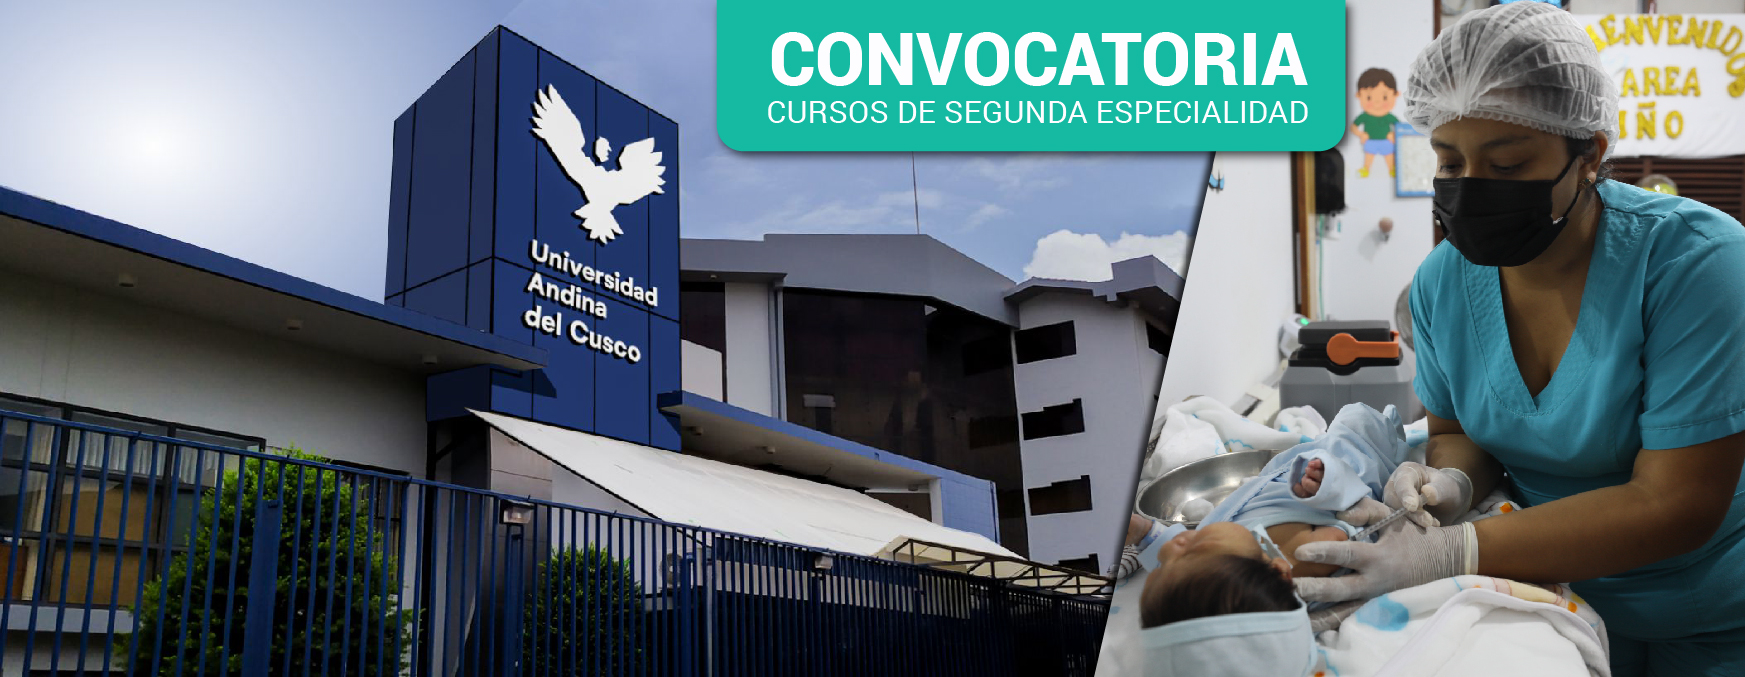 CONVOCATORIA: Inscríbete en cursos de Segunda Especialidad de la U. Andina del Cusco